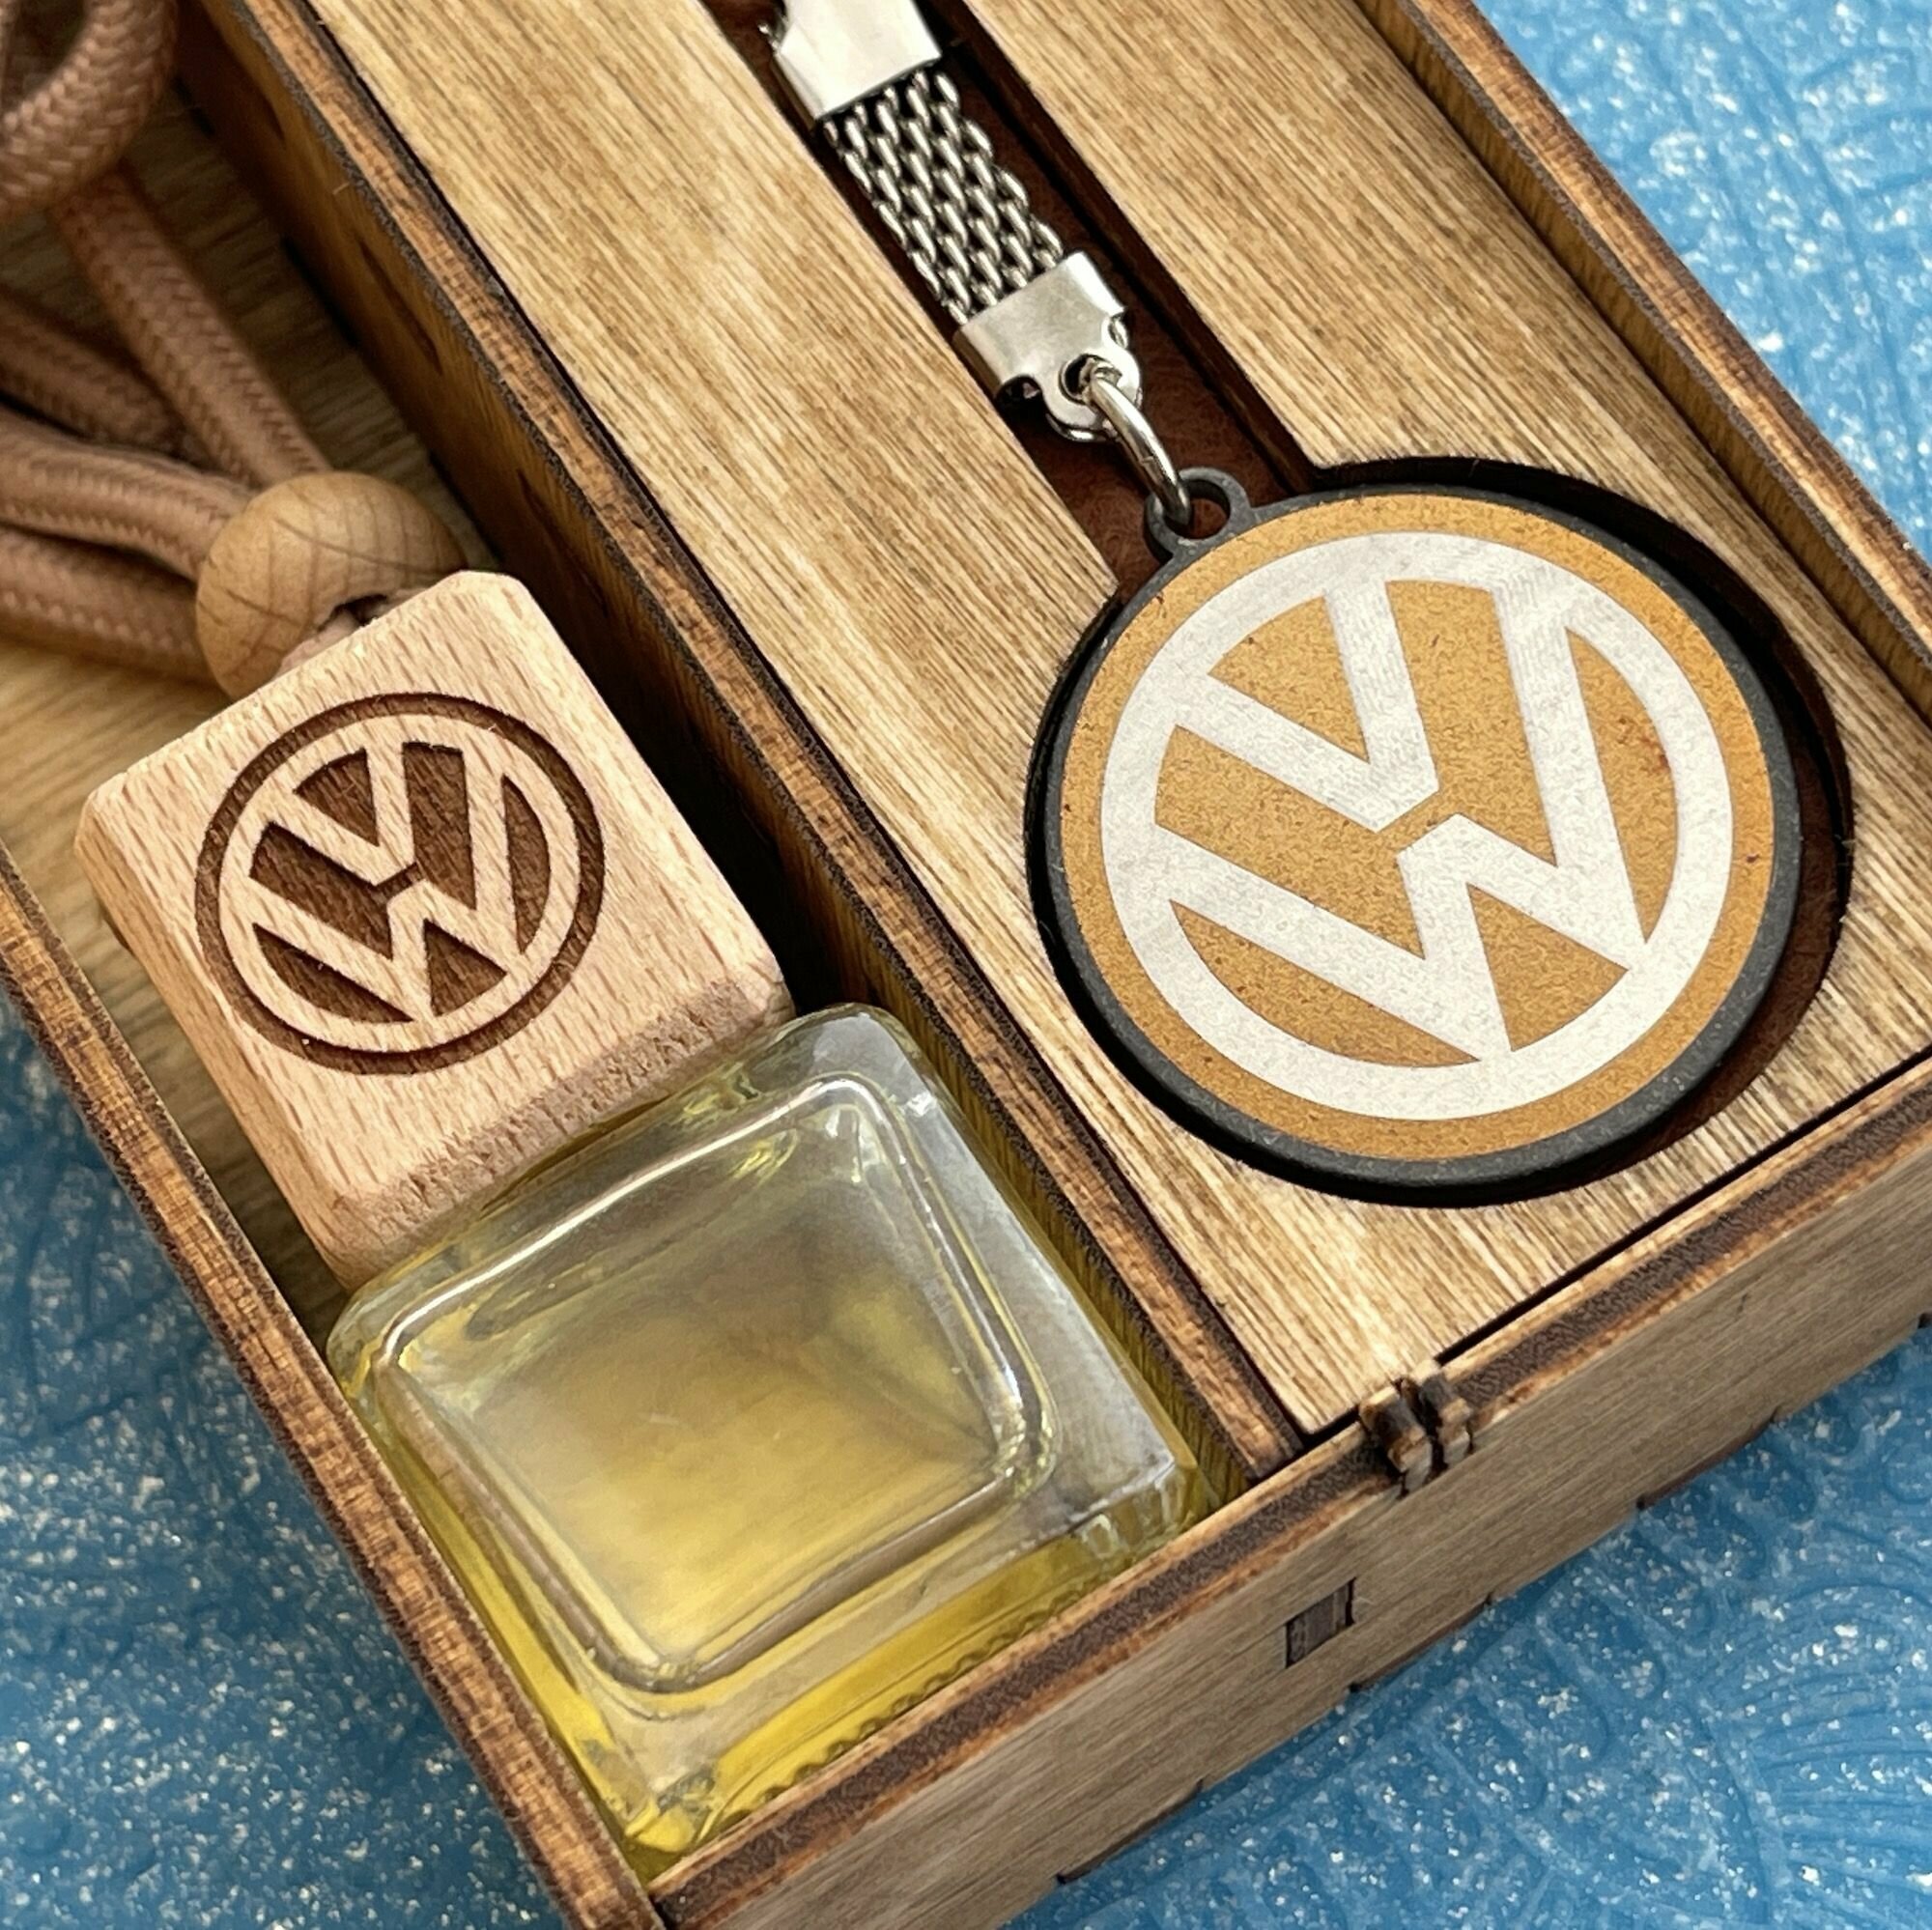 Подарочный набор Volkswagen. В комплекте титановый брелок + ароматизатор с популярным ароматом "Sex on board"